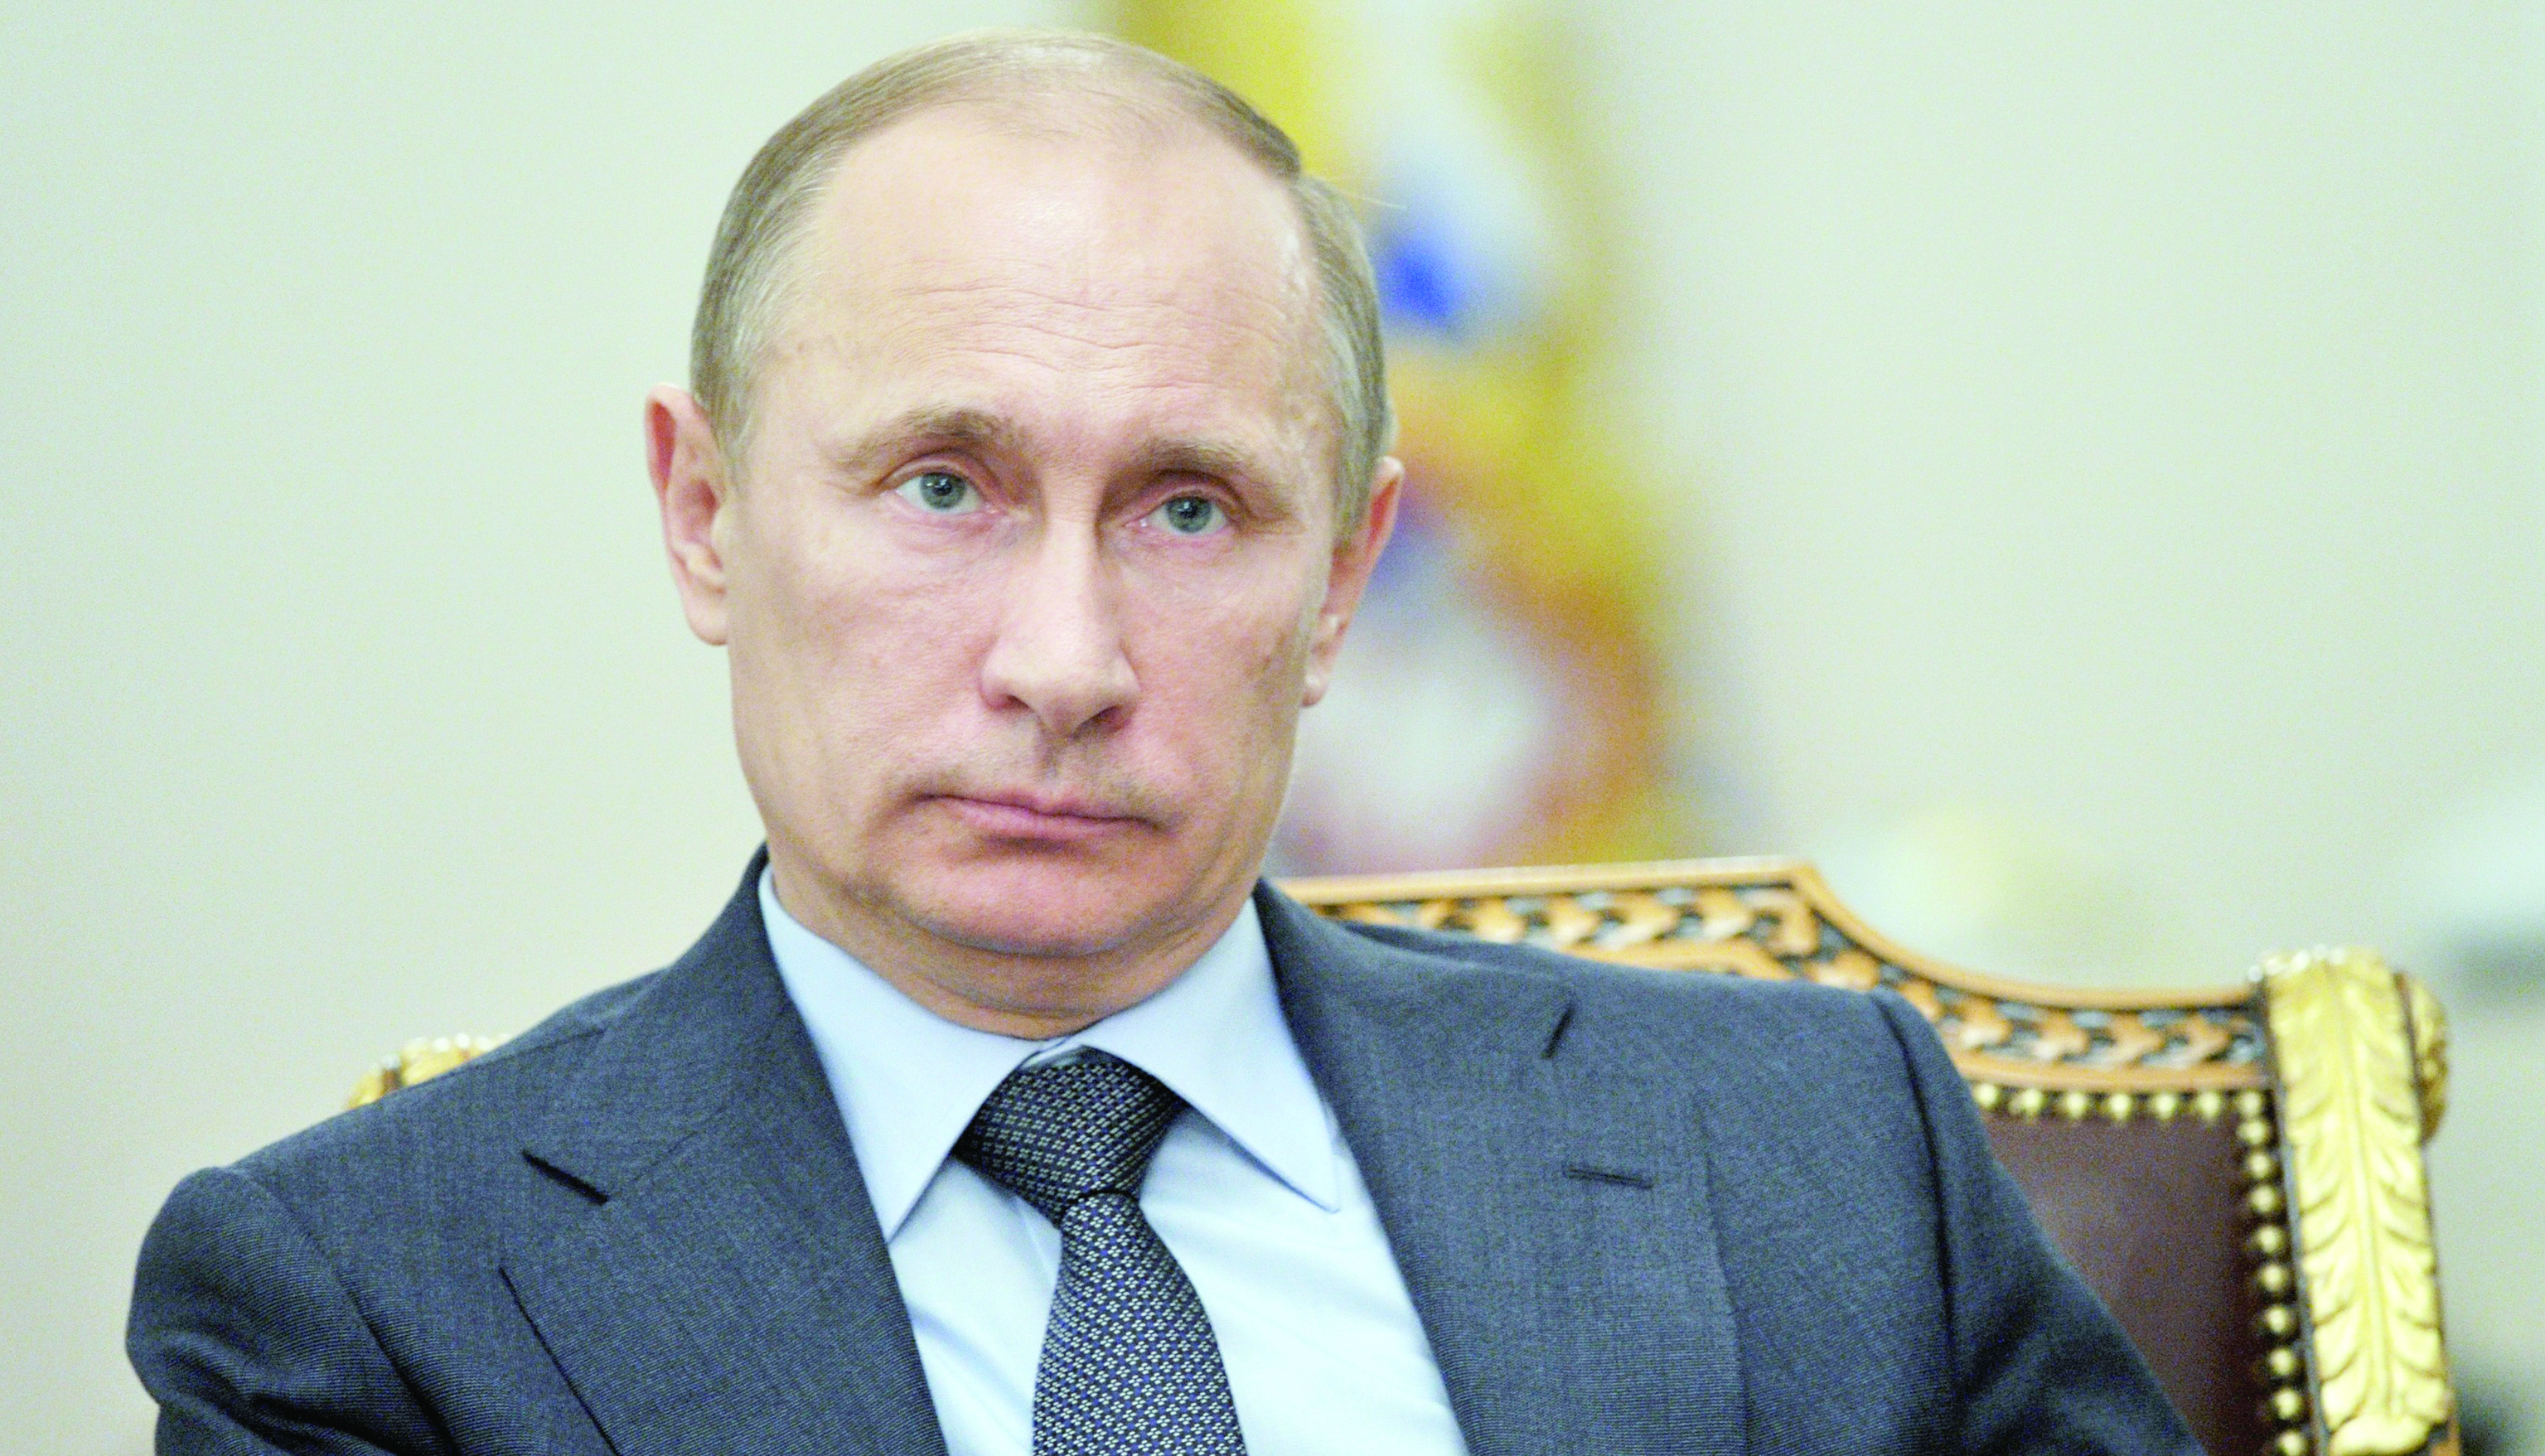 بوتين يدعو إلى تخفيف حدة التصعيد في شرقي أوكرانيا